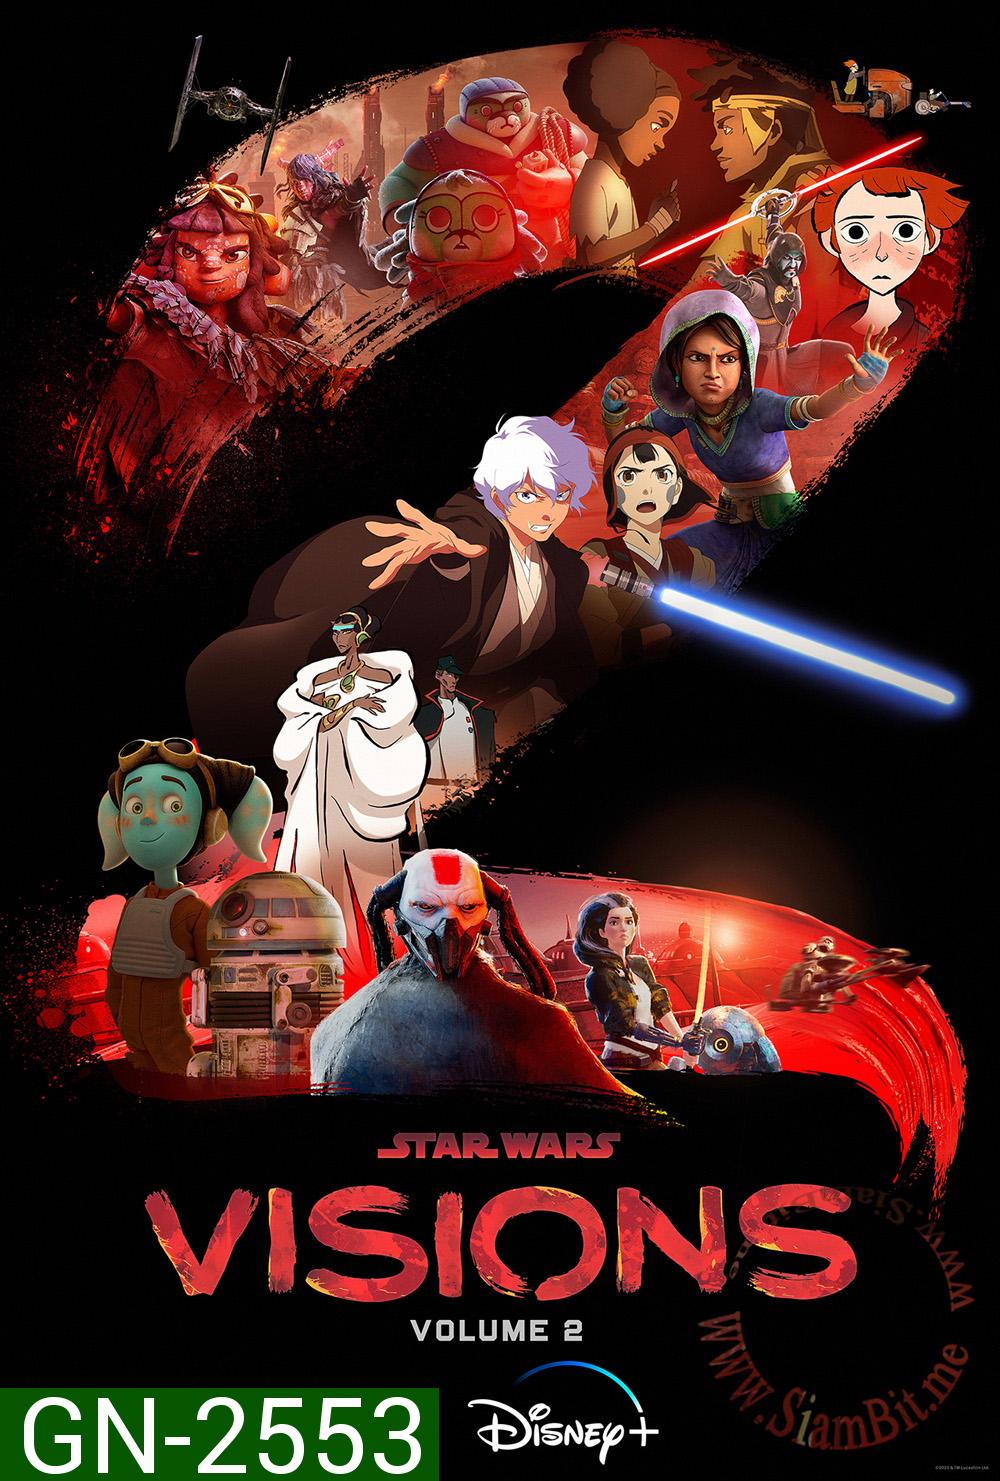 Star Wars Visions Volume 2 (9 ตอน)